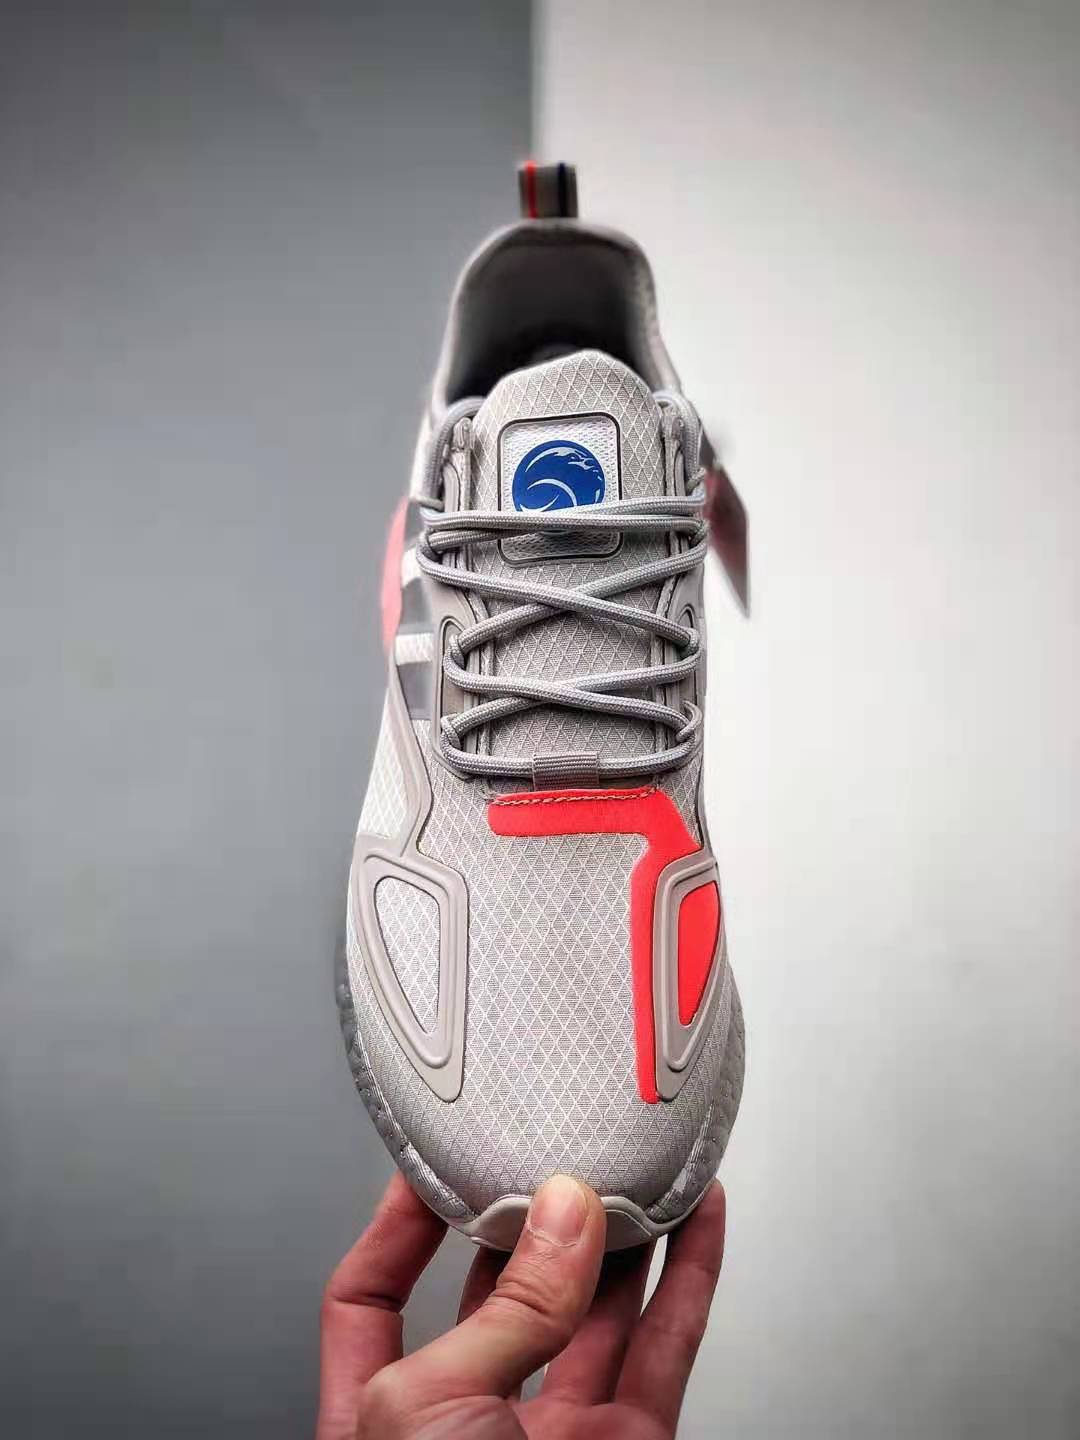 Adidas ZX 2K Boost Grey Silver Metallic FX7028 - Stylish Footwear for Modern Athletes